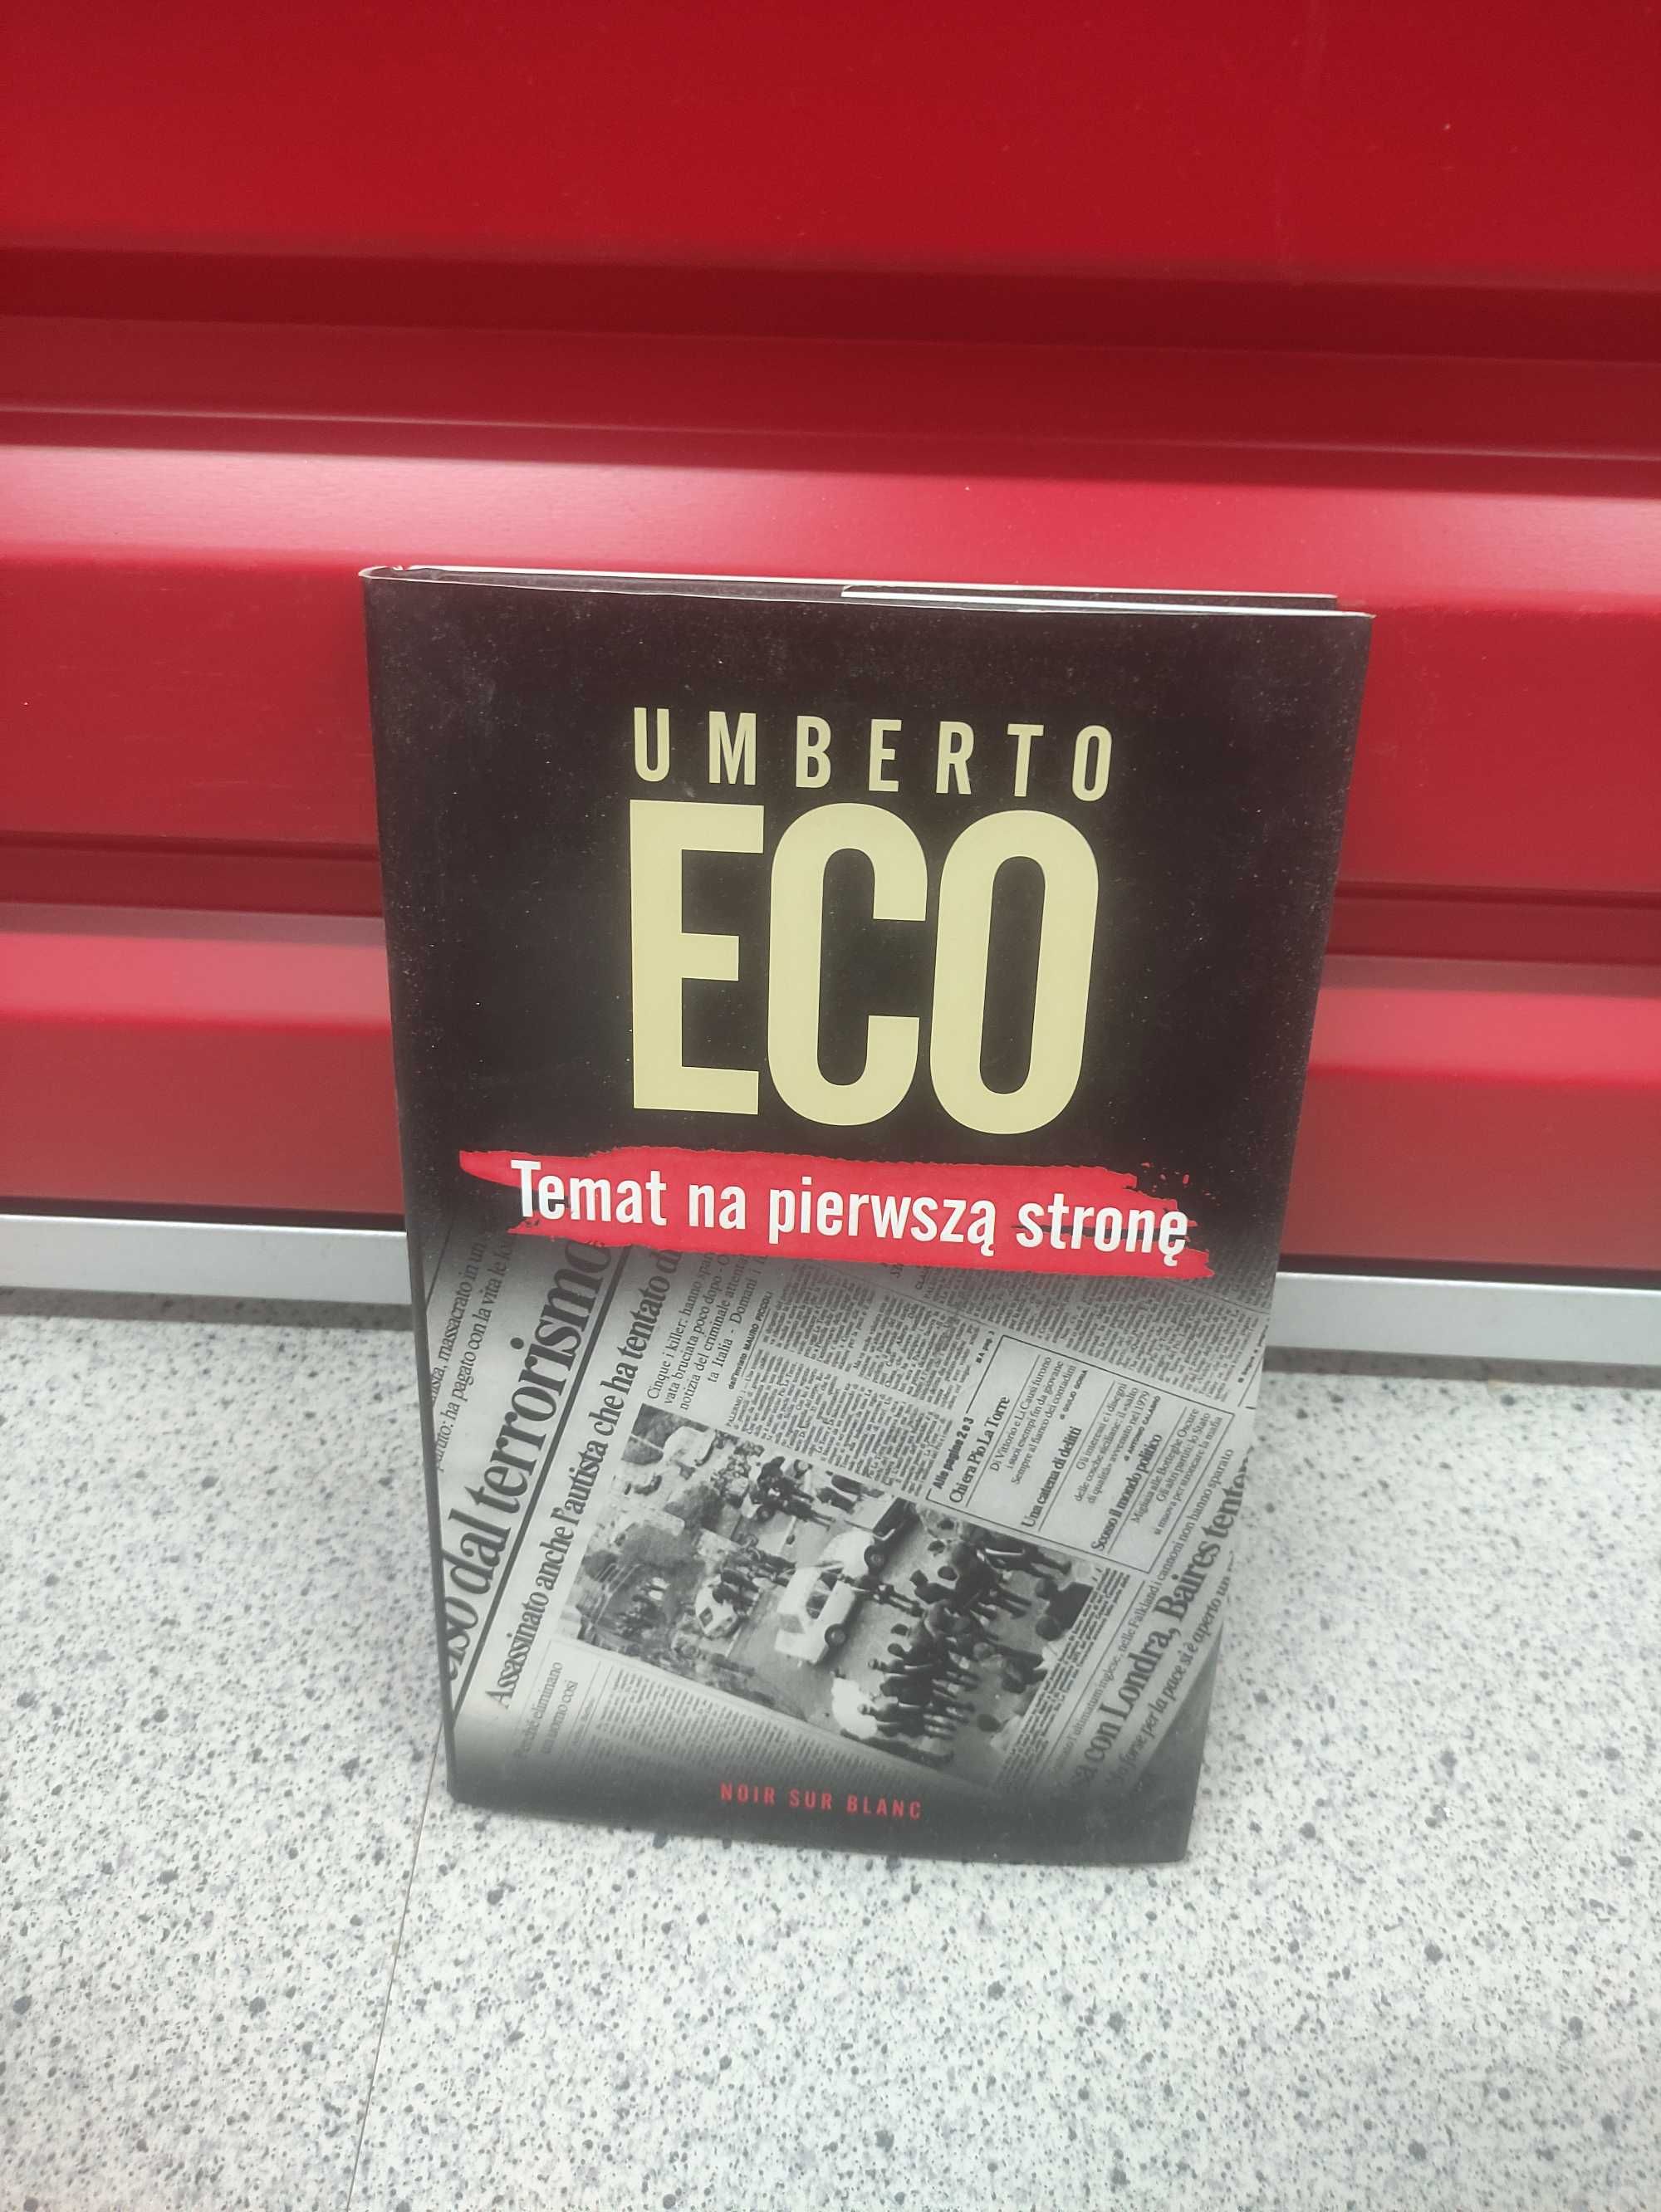 Temat na pierwszą stronę, Umberto Eco